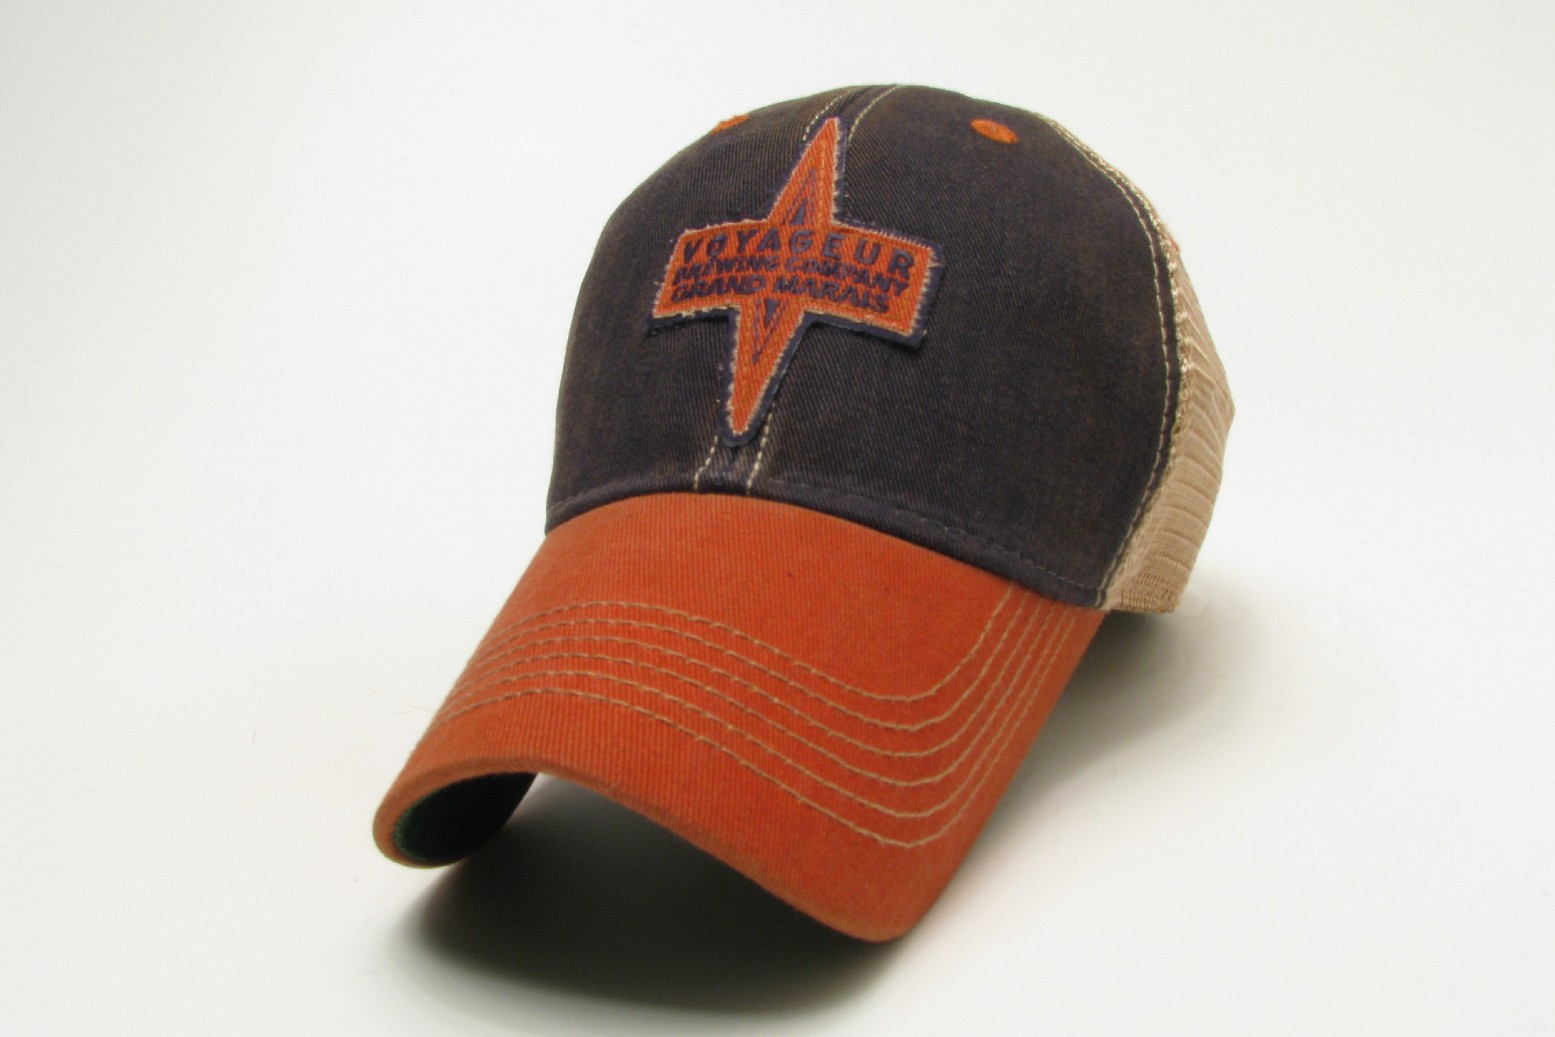 Trucker cap by Legacy